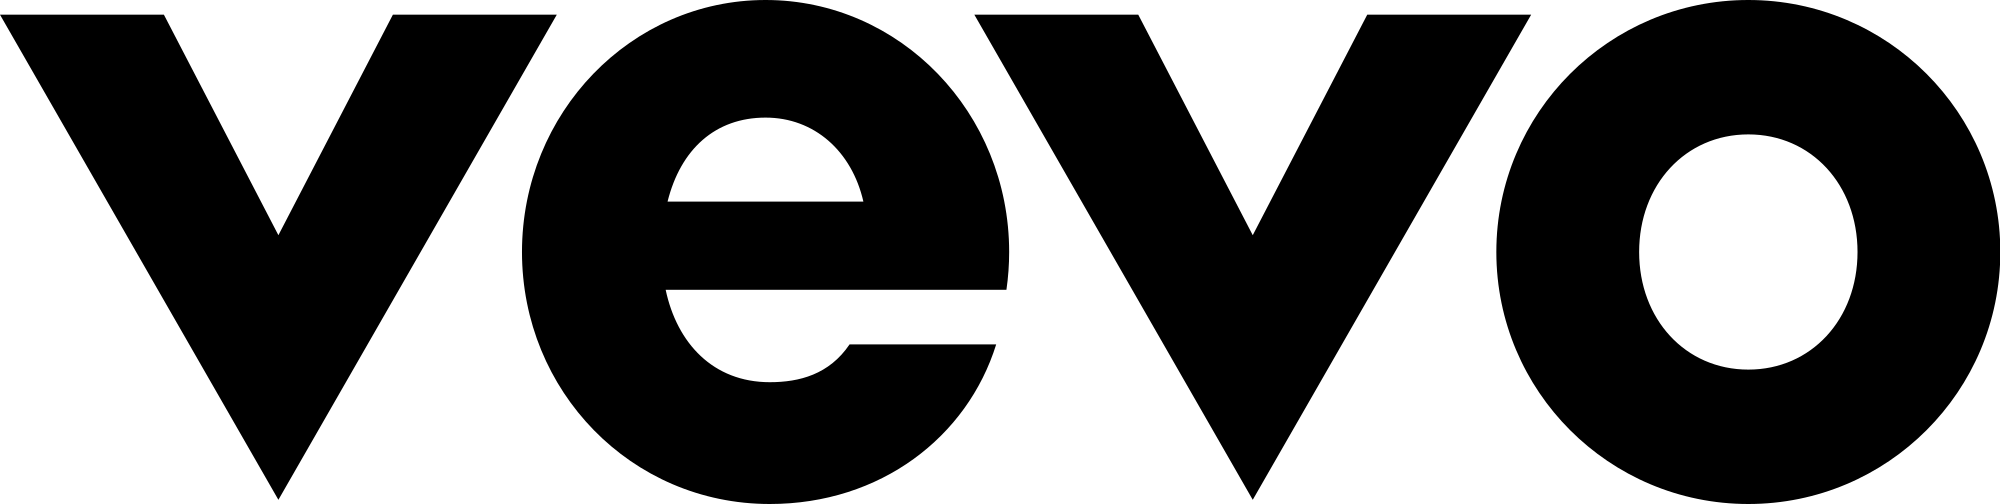 Vevo Logo - File:Vevo 2016 Logo.svg - Wikimedia Commons